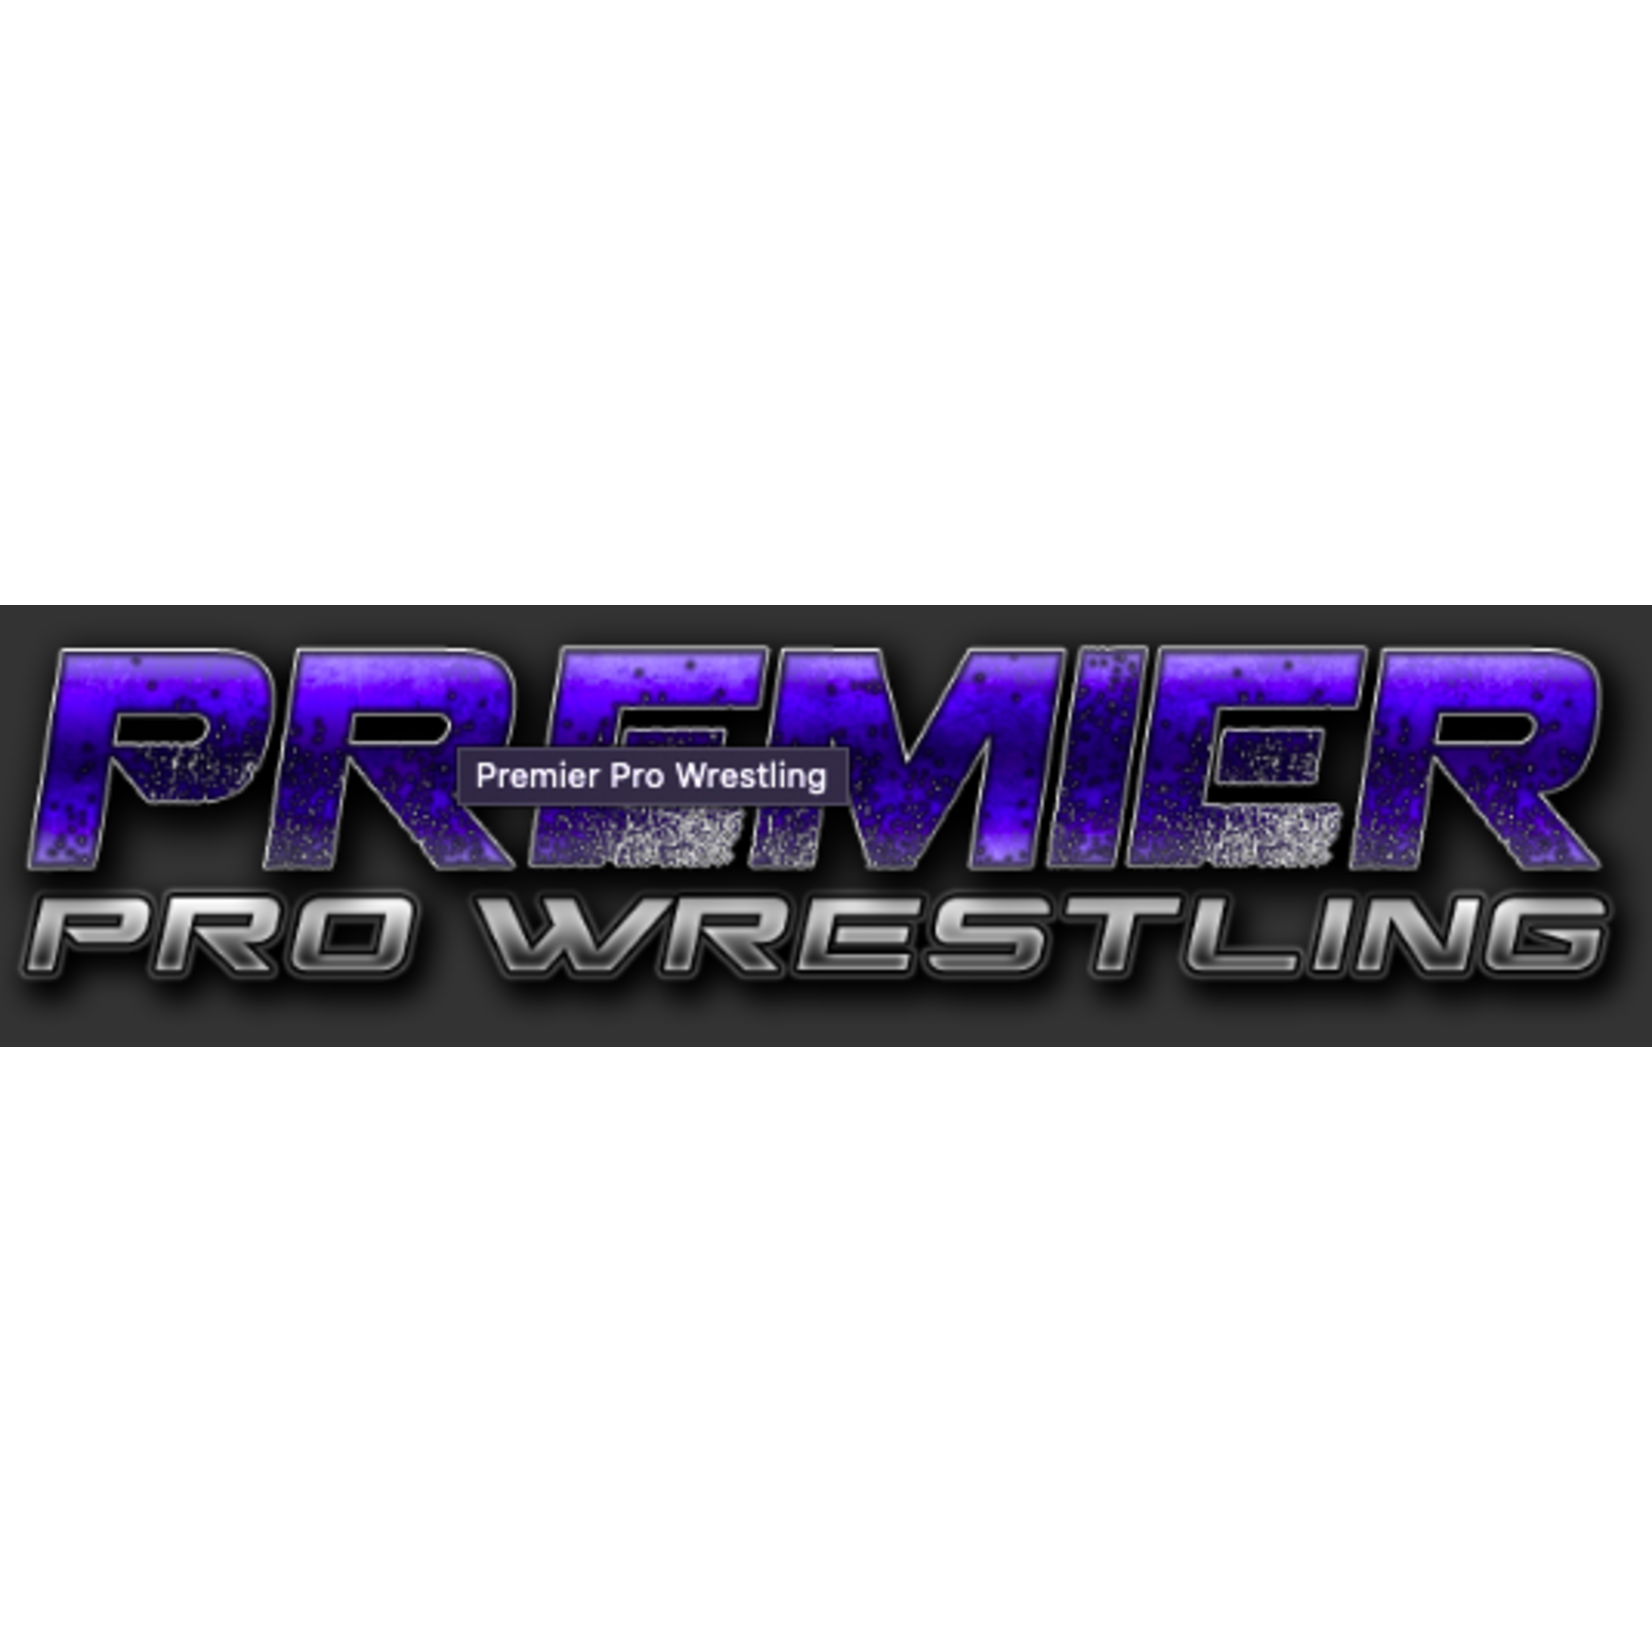 Premier Pro Wrestling-Woodstock Premier Pro Wrestling-Woodstock $10.00 General admission